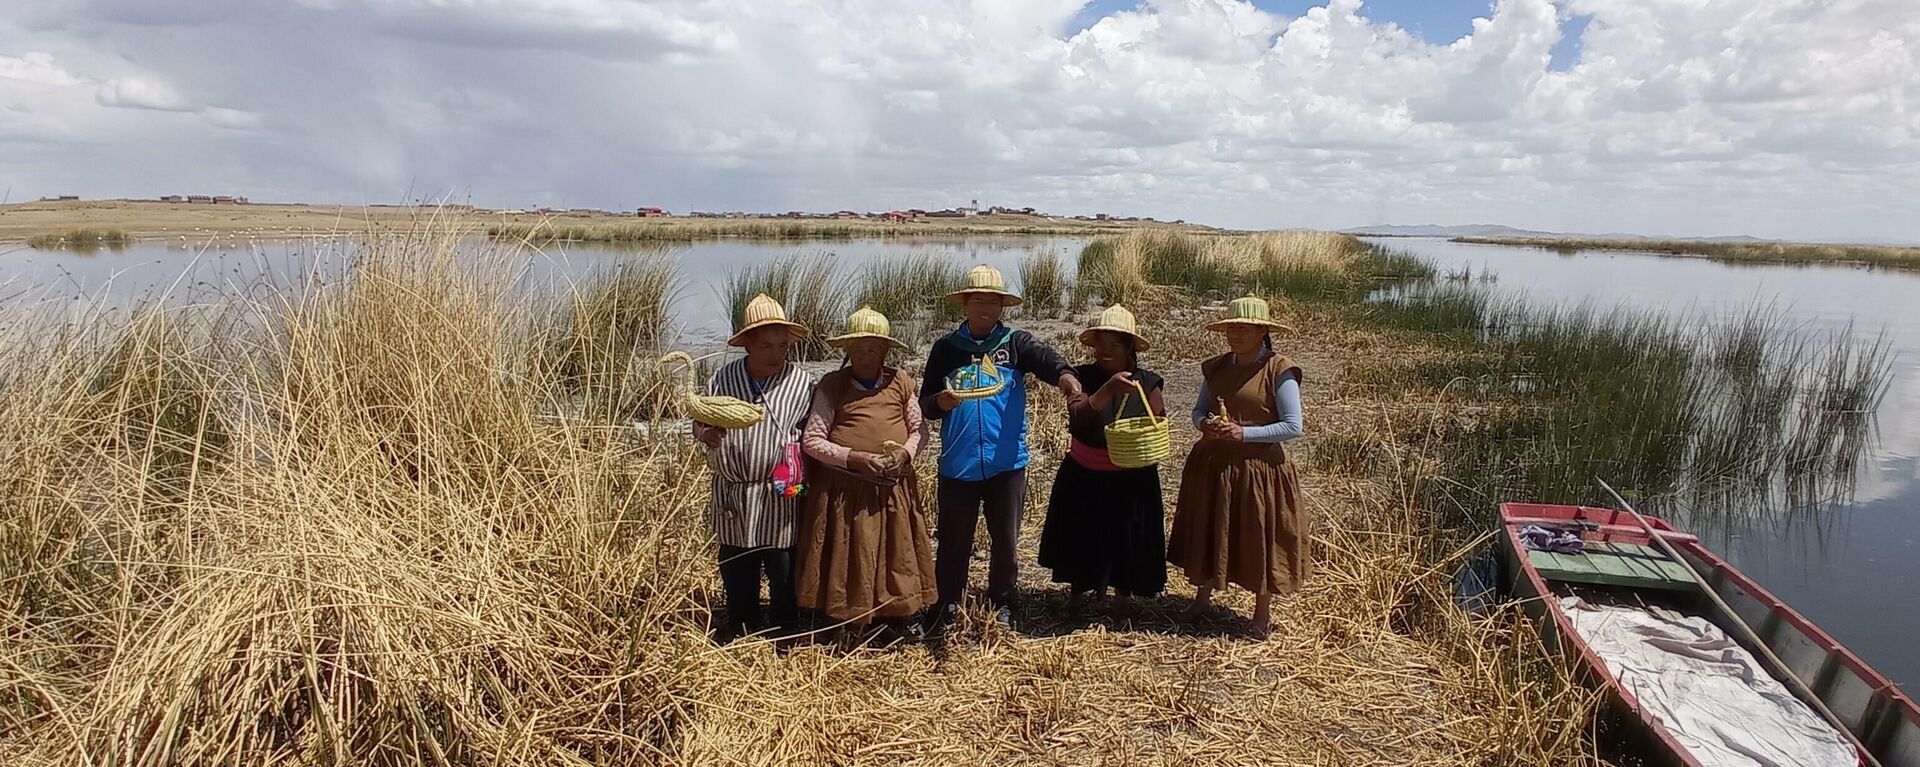 Indígenas de la comunidad uru en el lago Titicaca - Sputnik Mundo, 1920, 16.11.2021